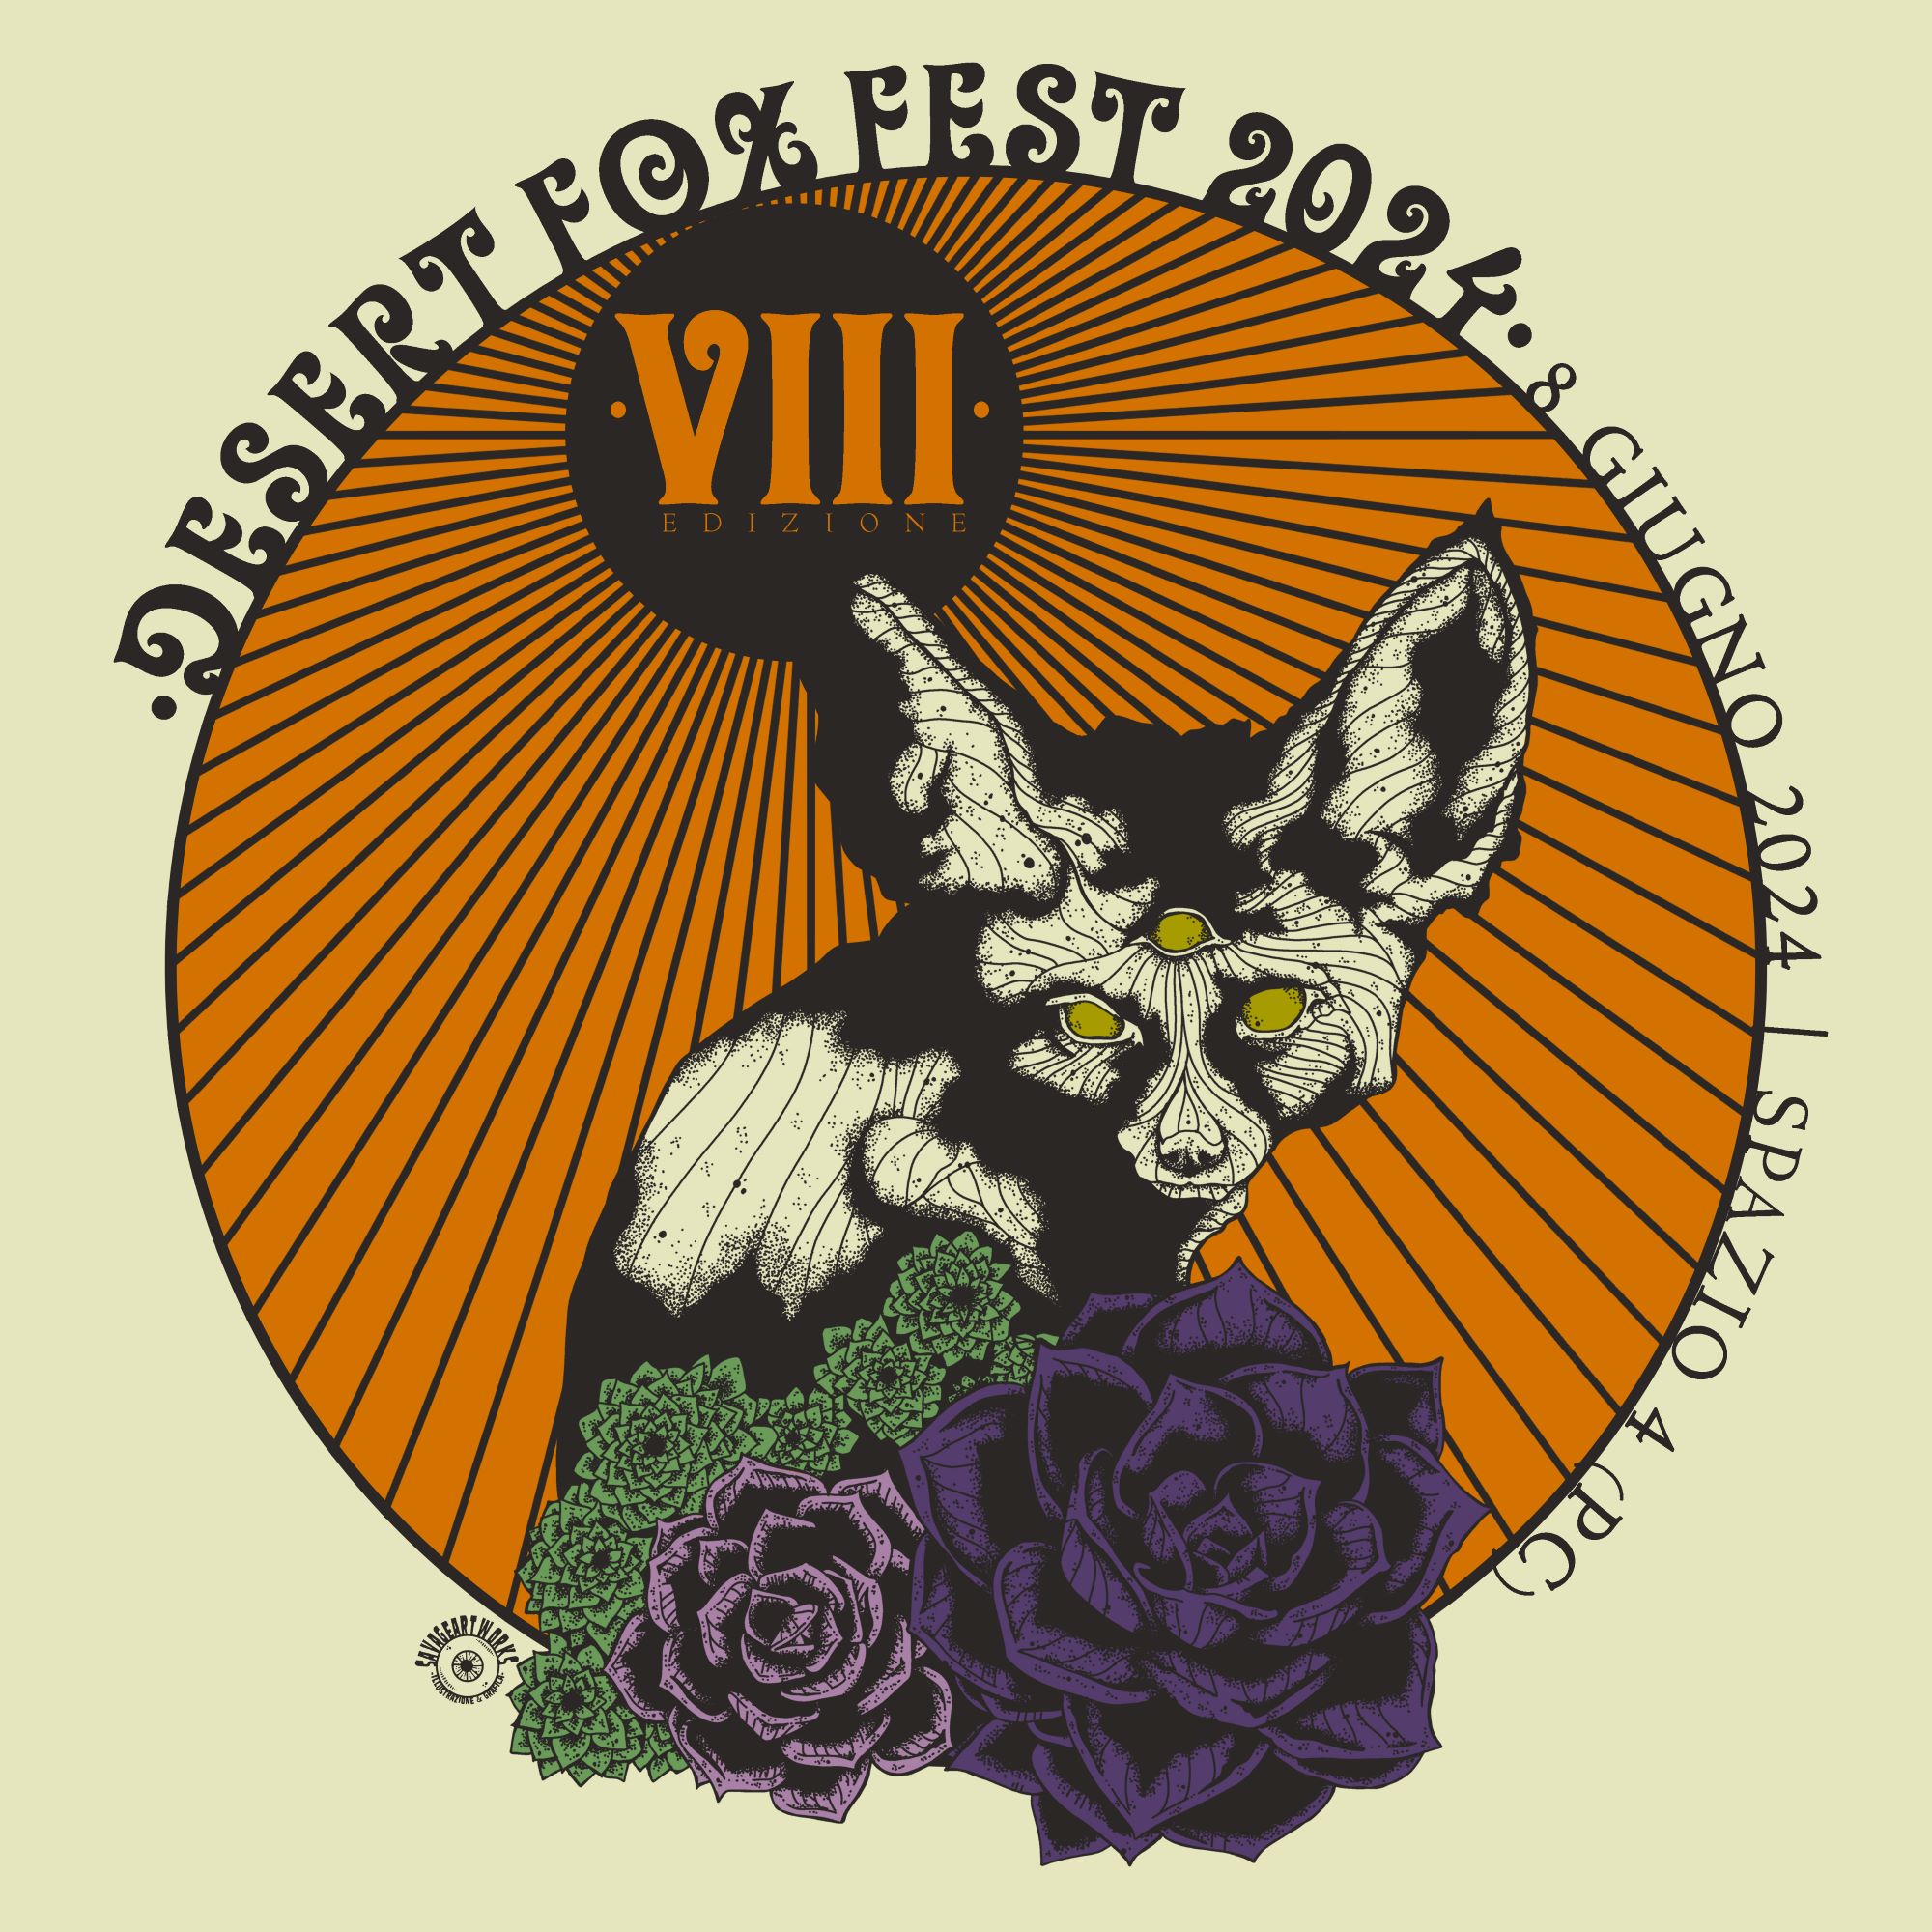 DESERT FOX FEST – VIIIᵃ edizione Sabato 8 giugno a Piacenza – 7 band su 2 palchi. Il Fennec Colpisce Ancora